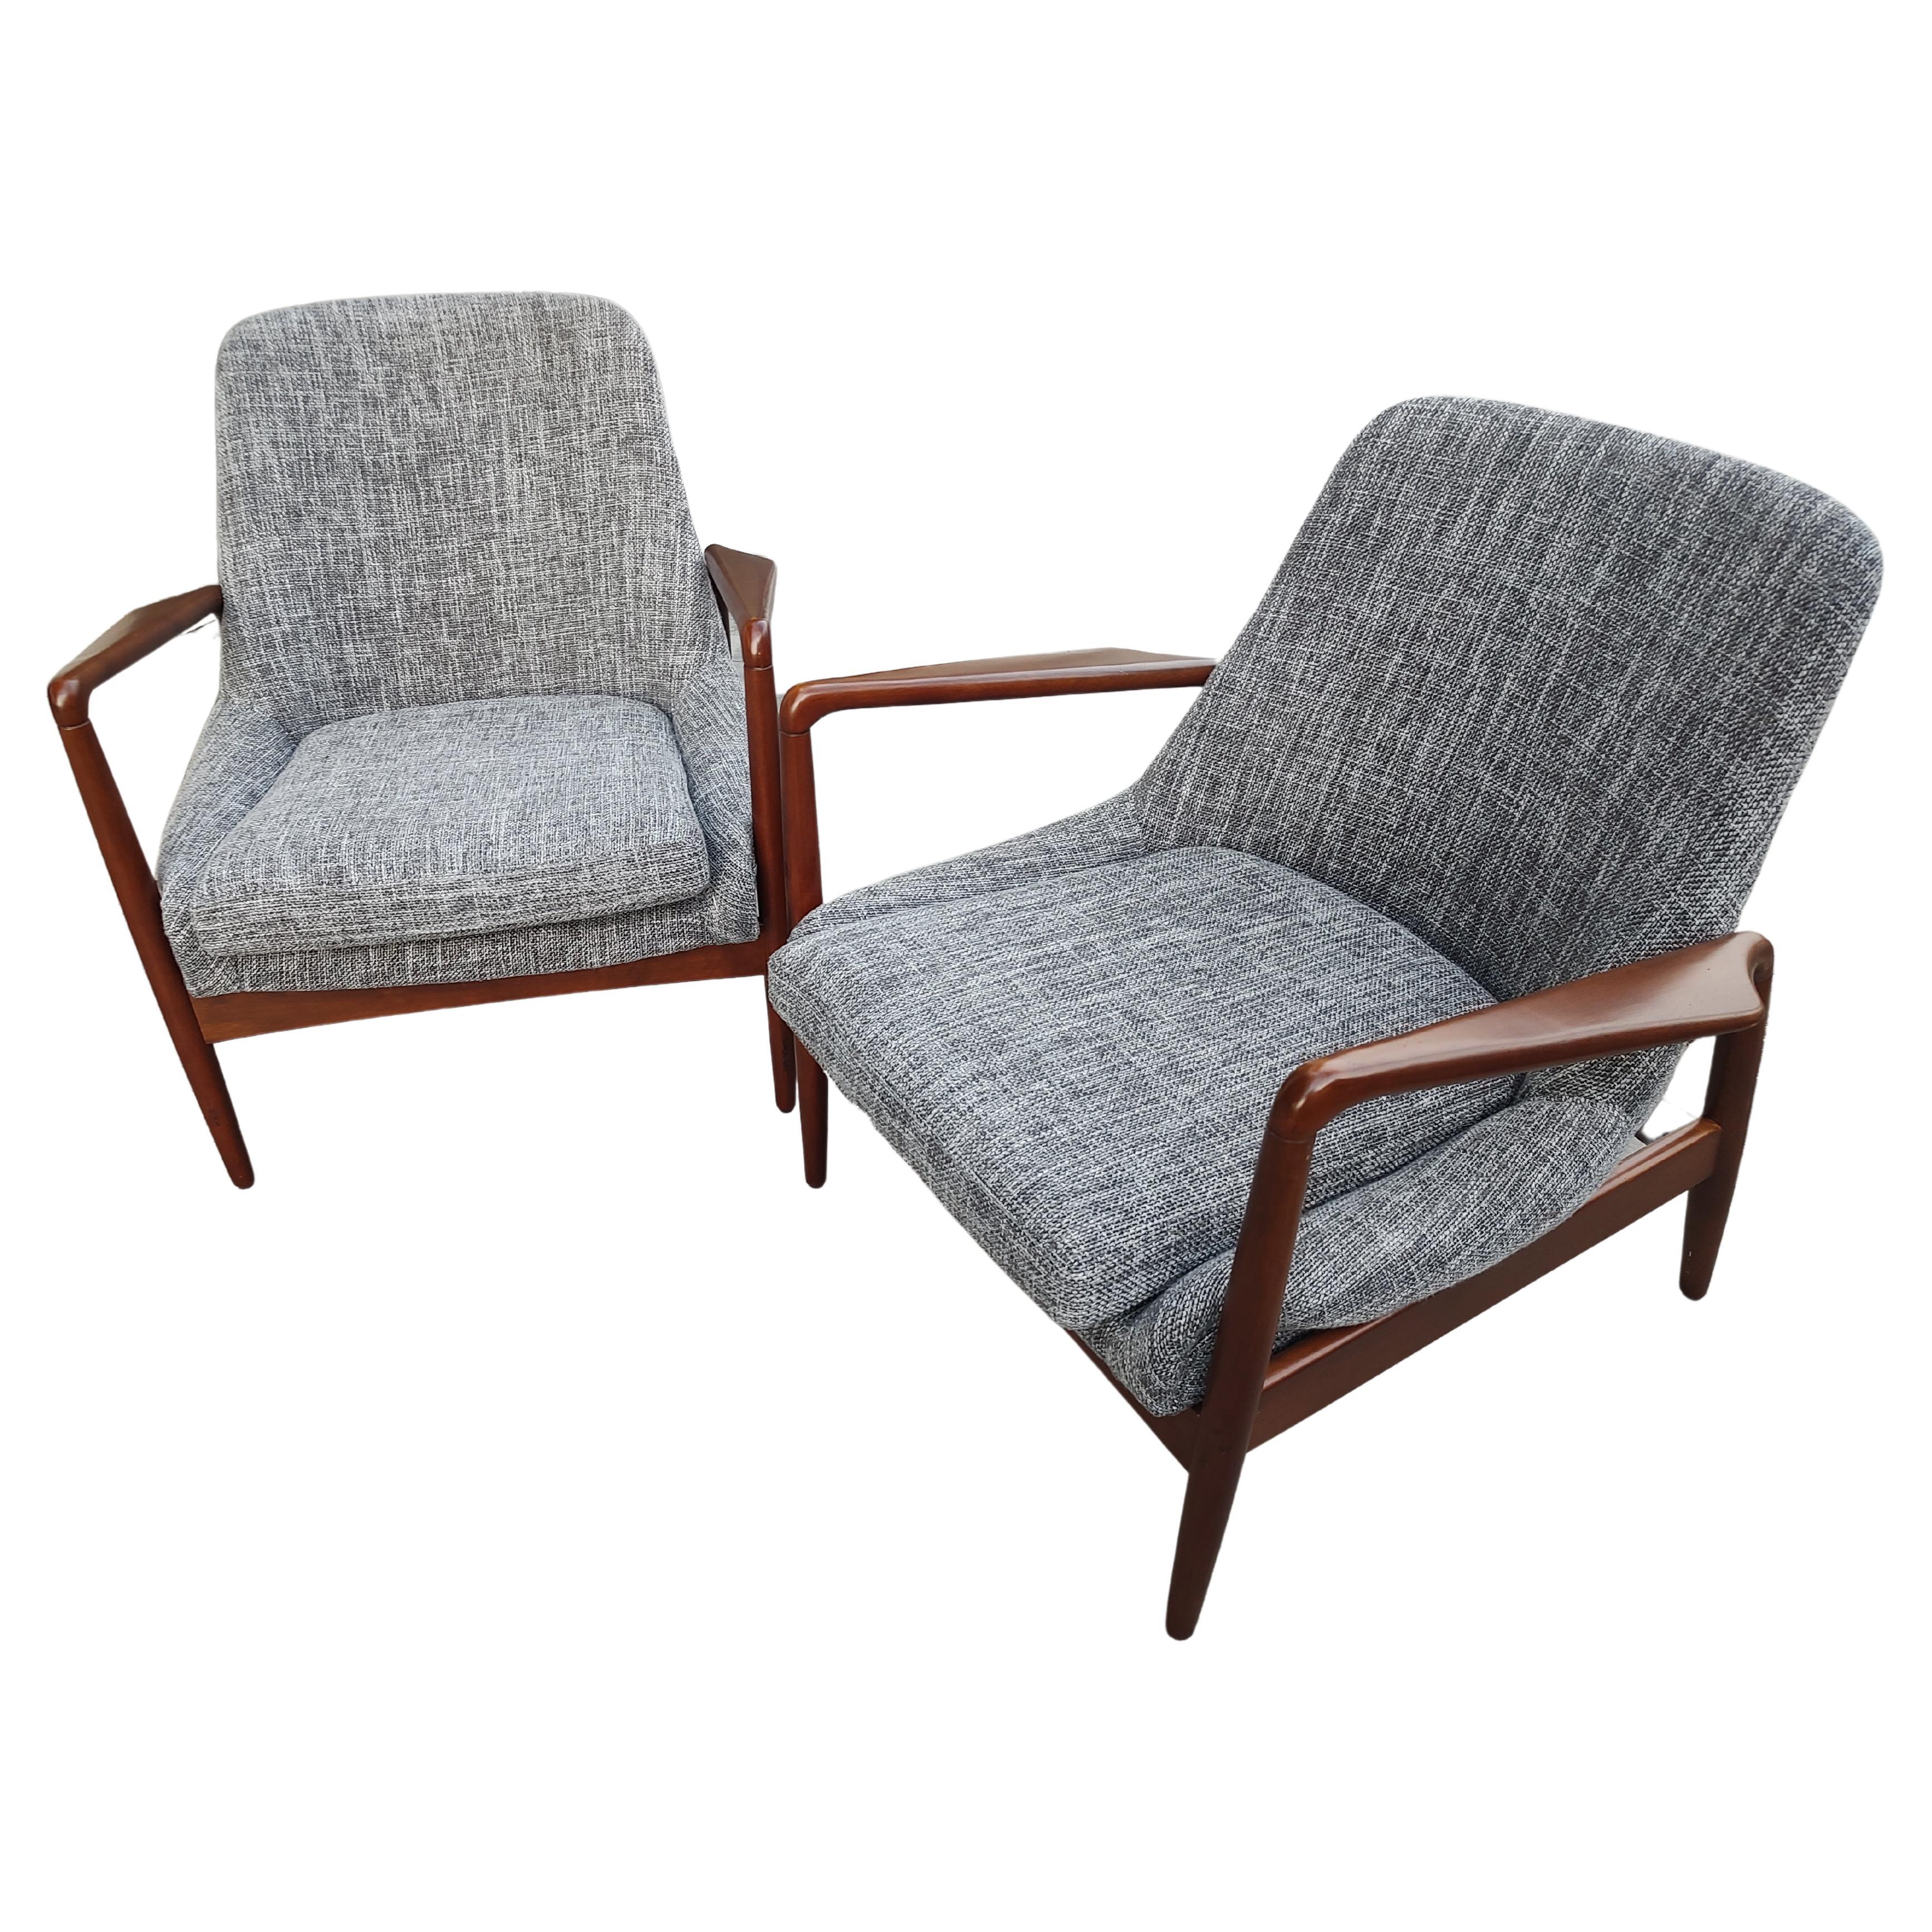 Fantastisches Paar Mid Century Modern Lounge Chairs in einem fantastischen Stoff, der an die fünfziger Jahre erinnert. Schöne Farbe in einem Tweed-Stoff. Skulpturale Armlehnen mit tollen Linien bei diesen Stühlen
 Einige Kerben in der Oberfläche der